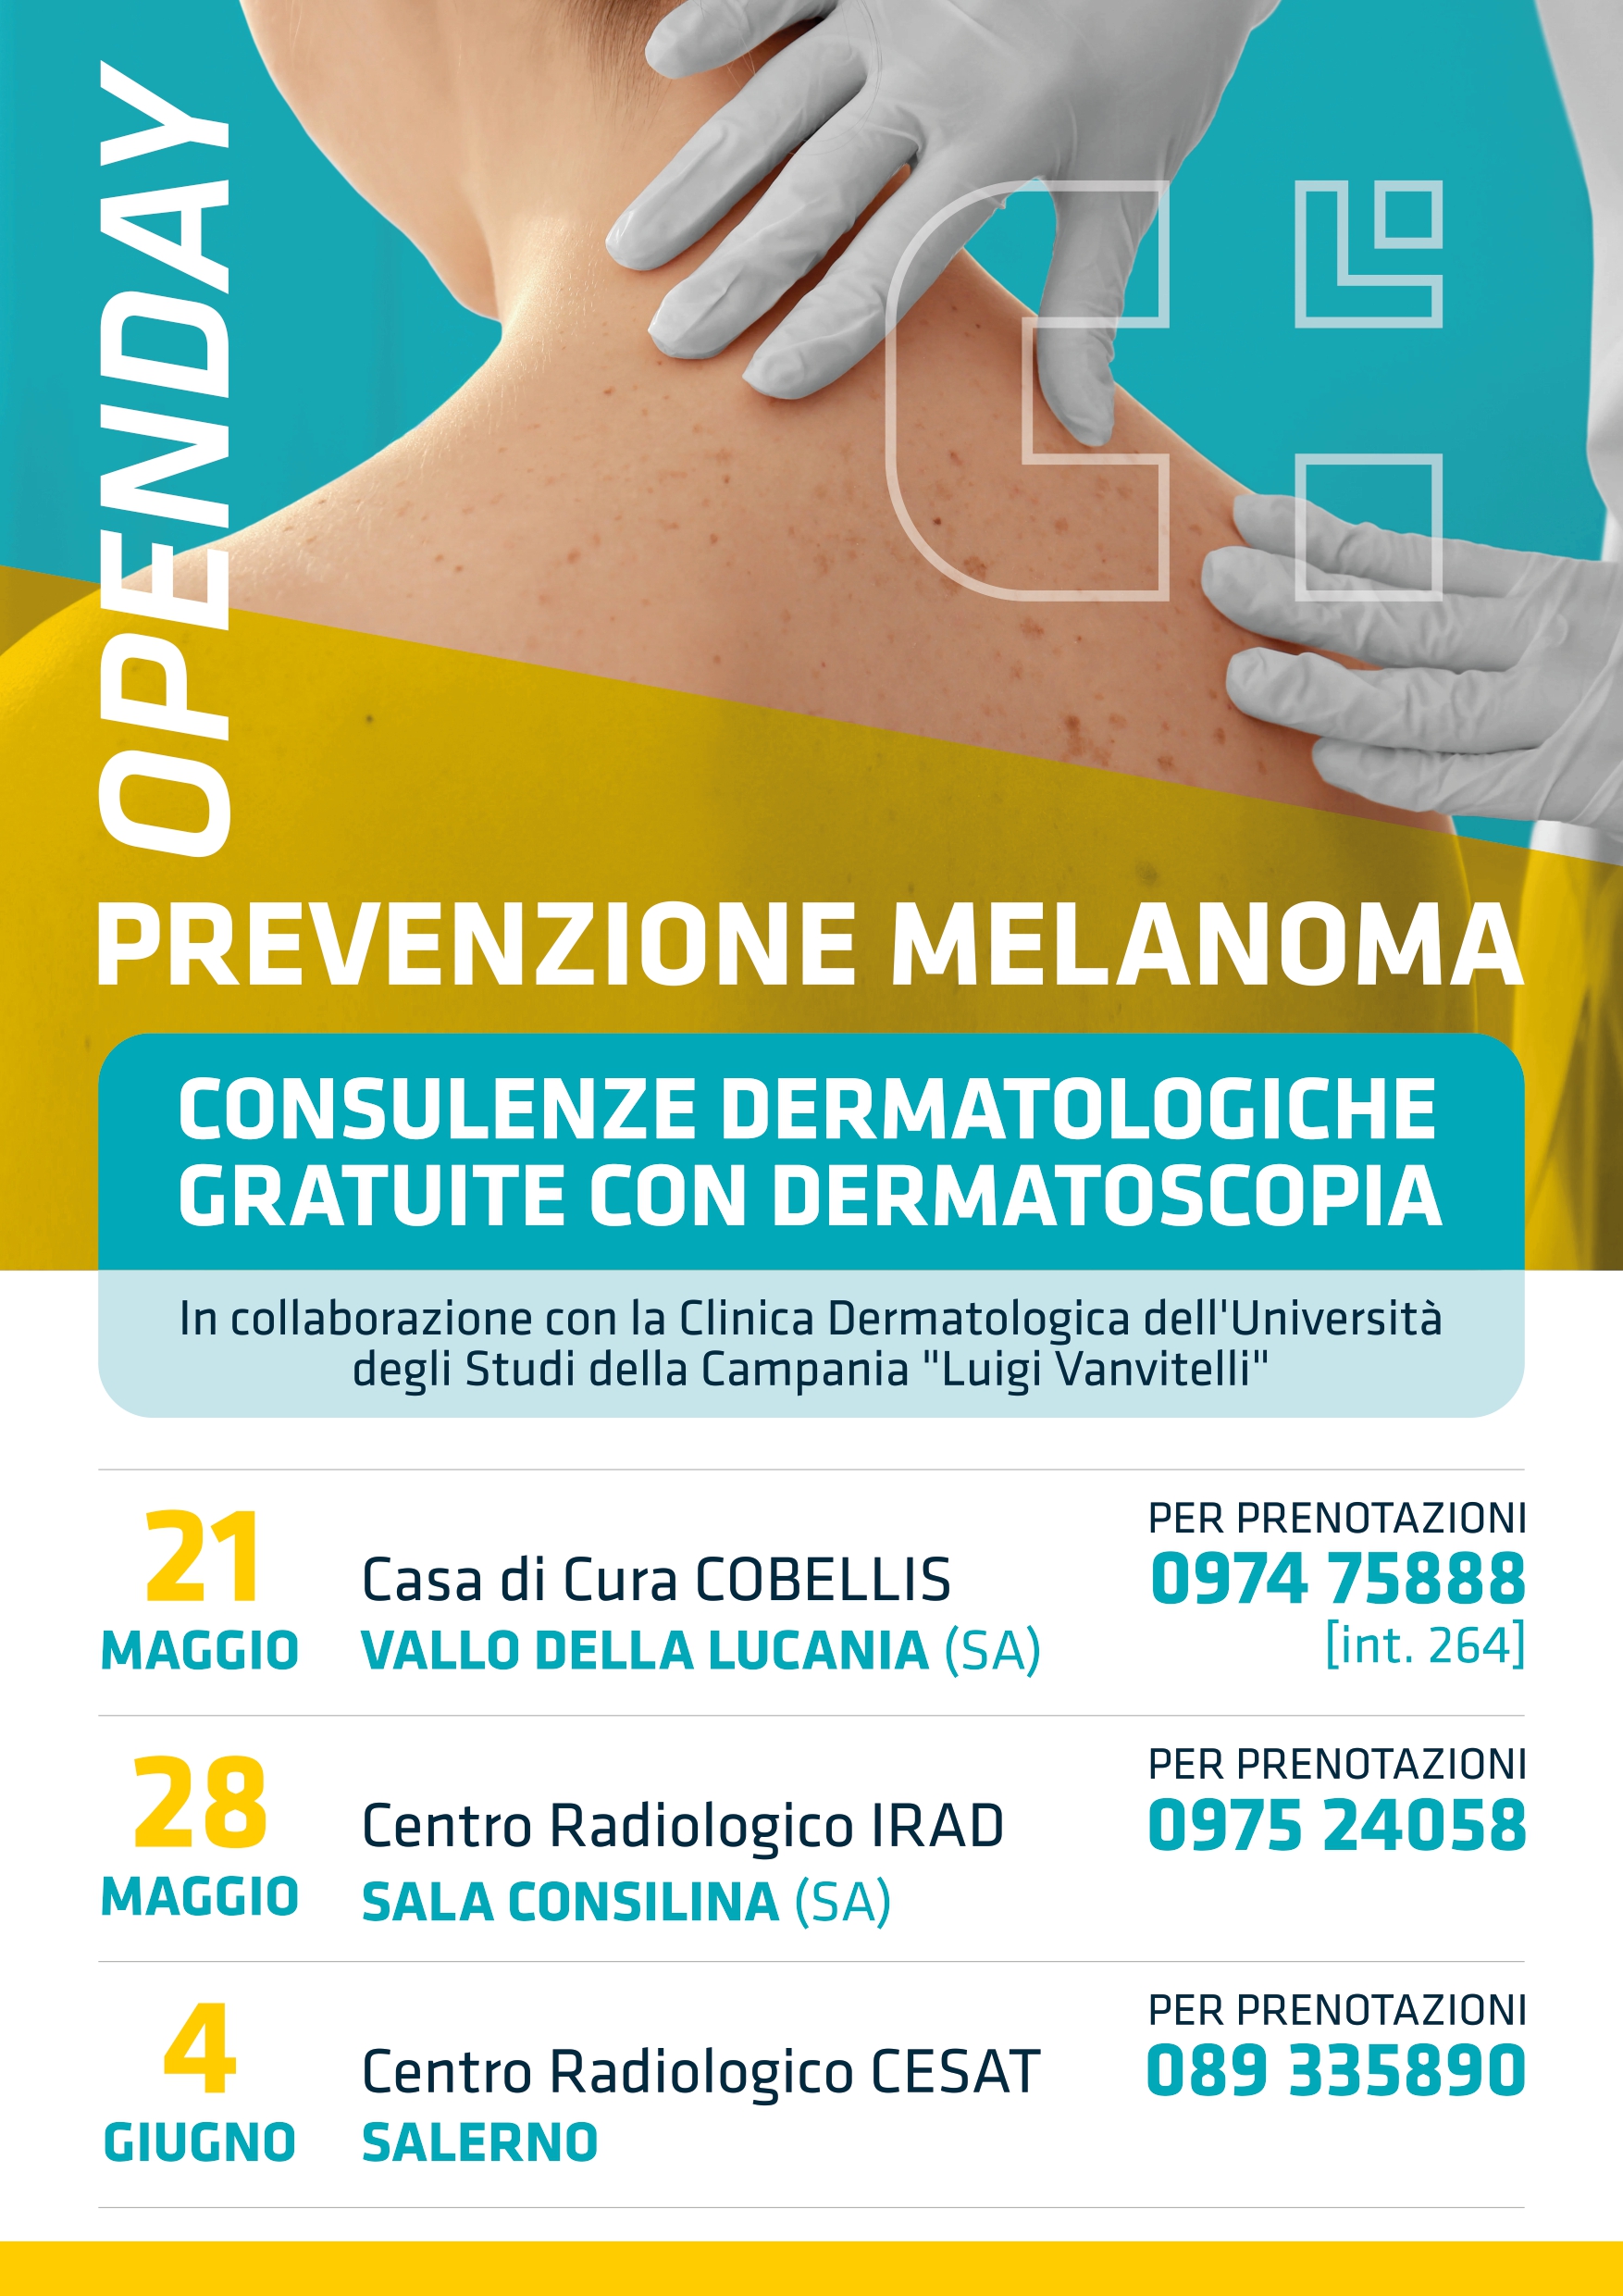 Vallo della Lucania: Casa di Cura Cobellis, 3 giornate su screening melanoma